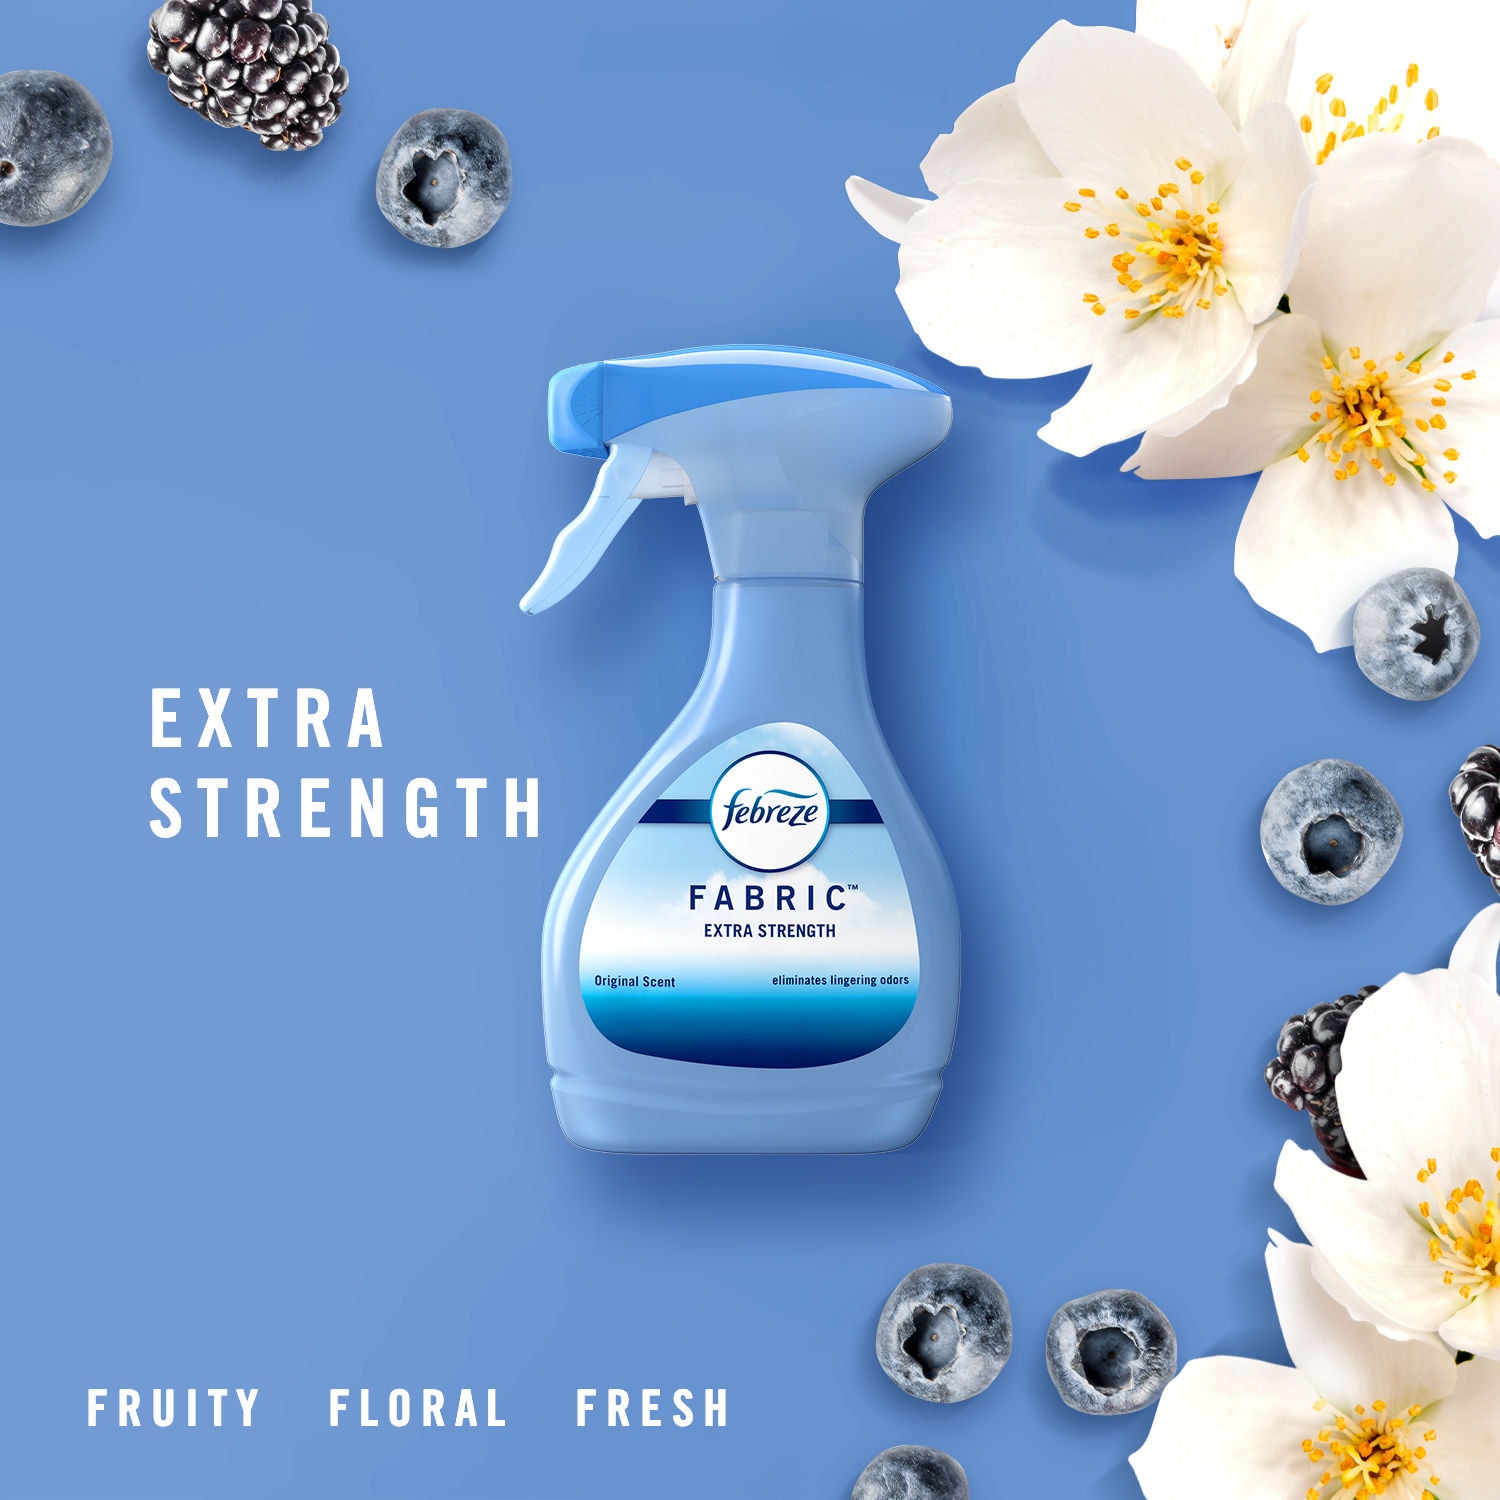 Febreze Fabric Fabric Refresher, Extra Strength, Original Scent - 800 ml